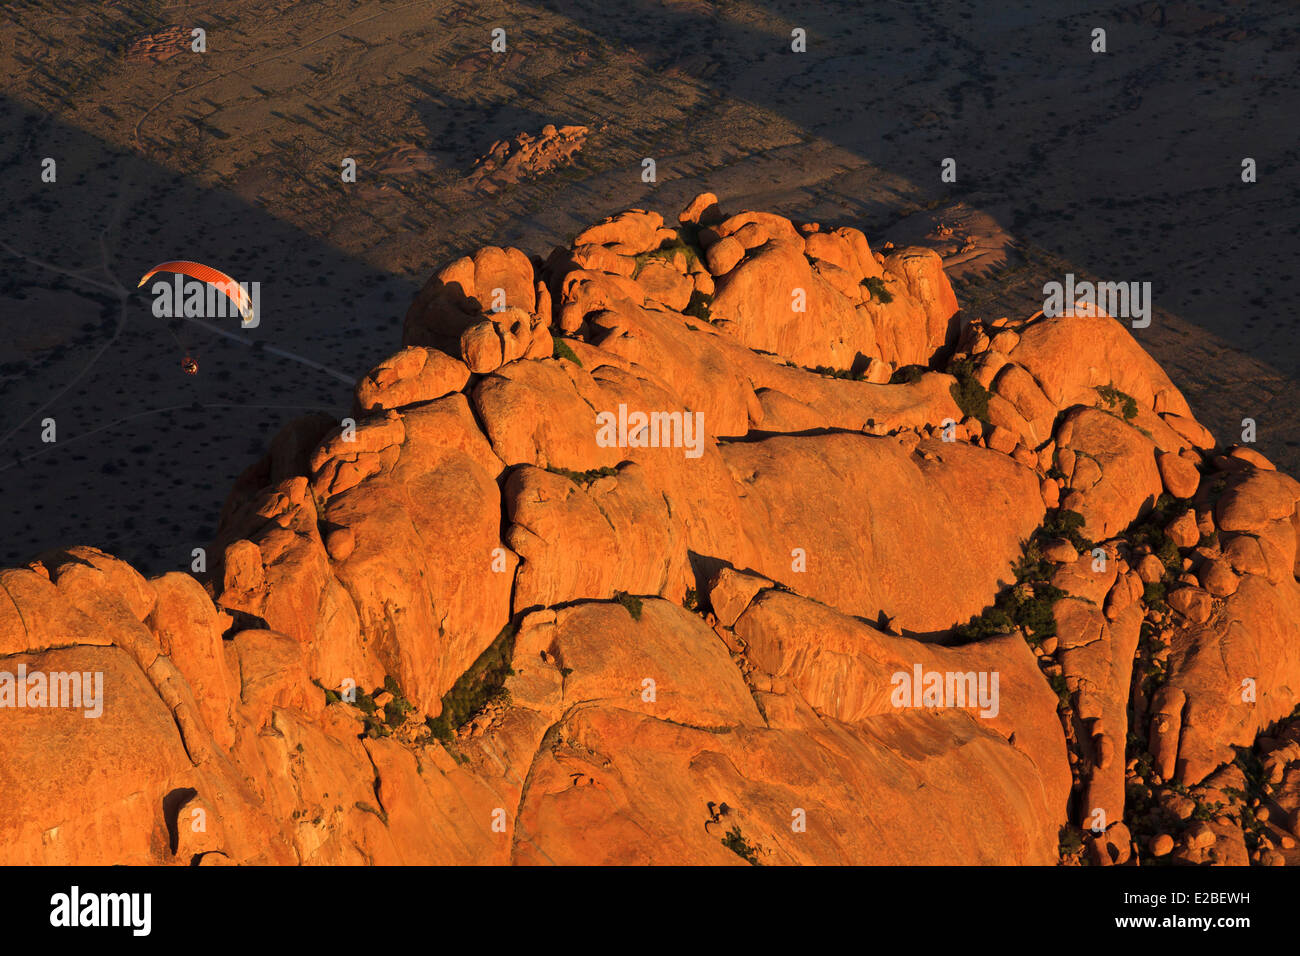 Namibia, Erongo Region, Damaraland, Spitzkoppe or Spitzkop (1784 m), granite mountain in Namib Desert, paramotor (aerial view) Stock Photo